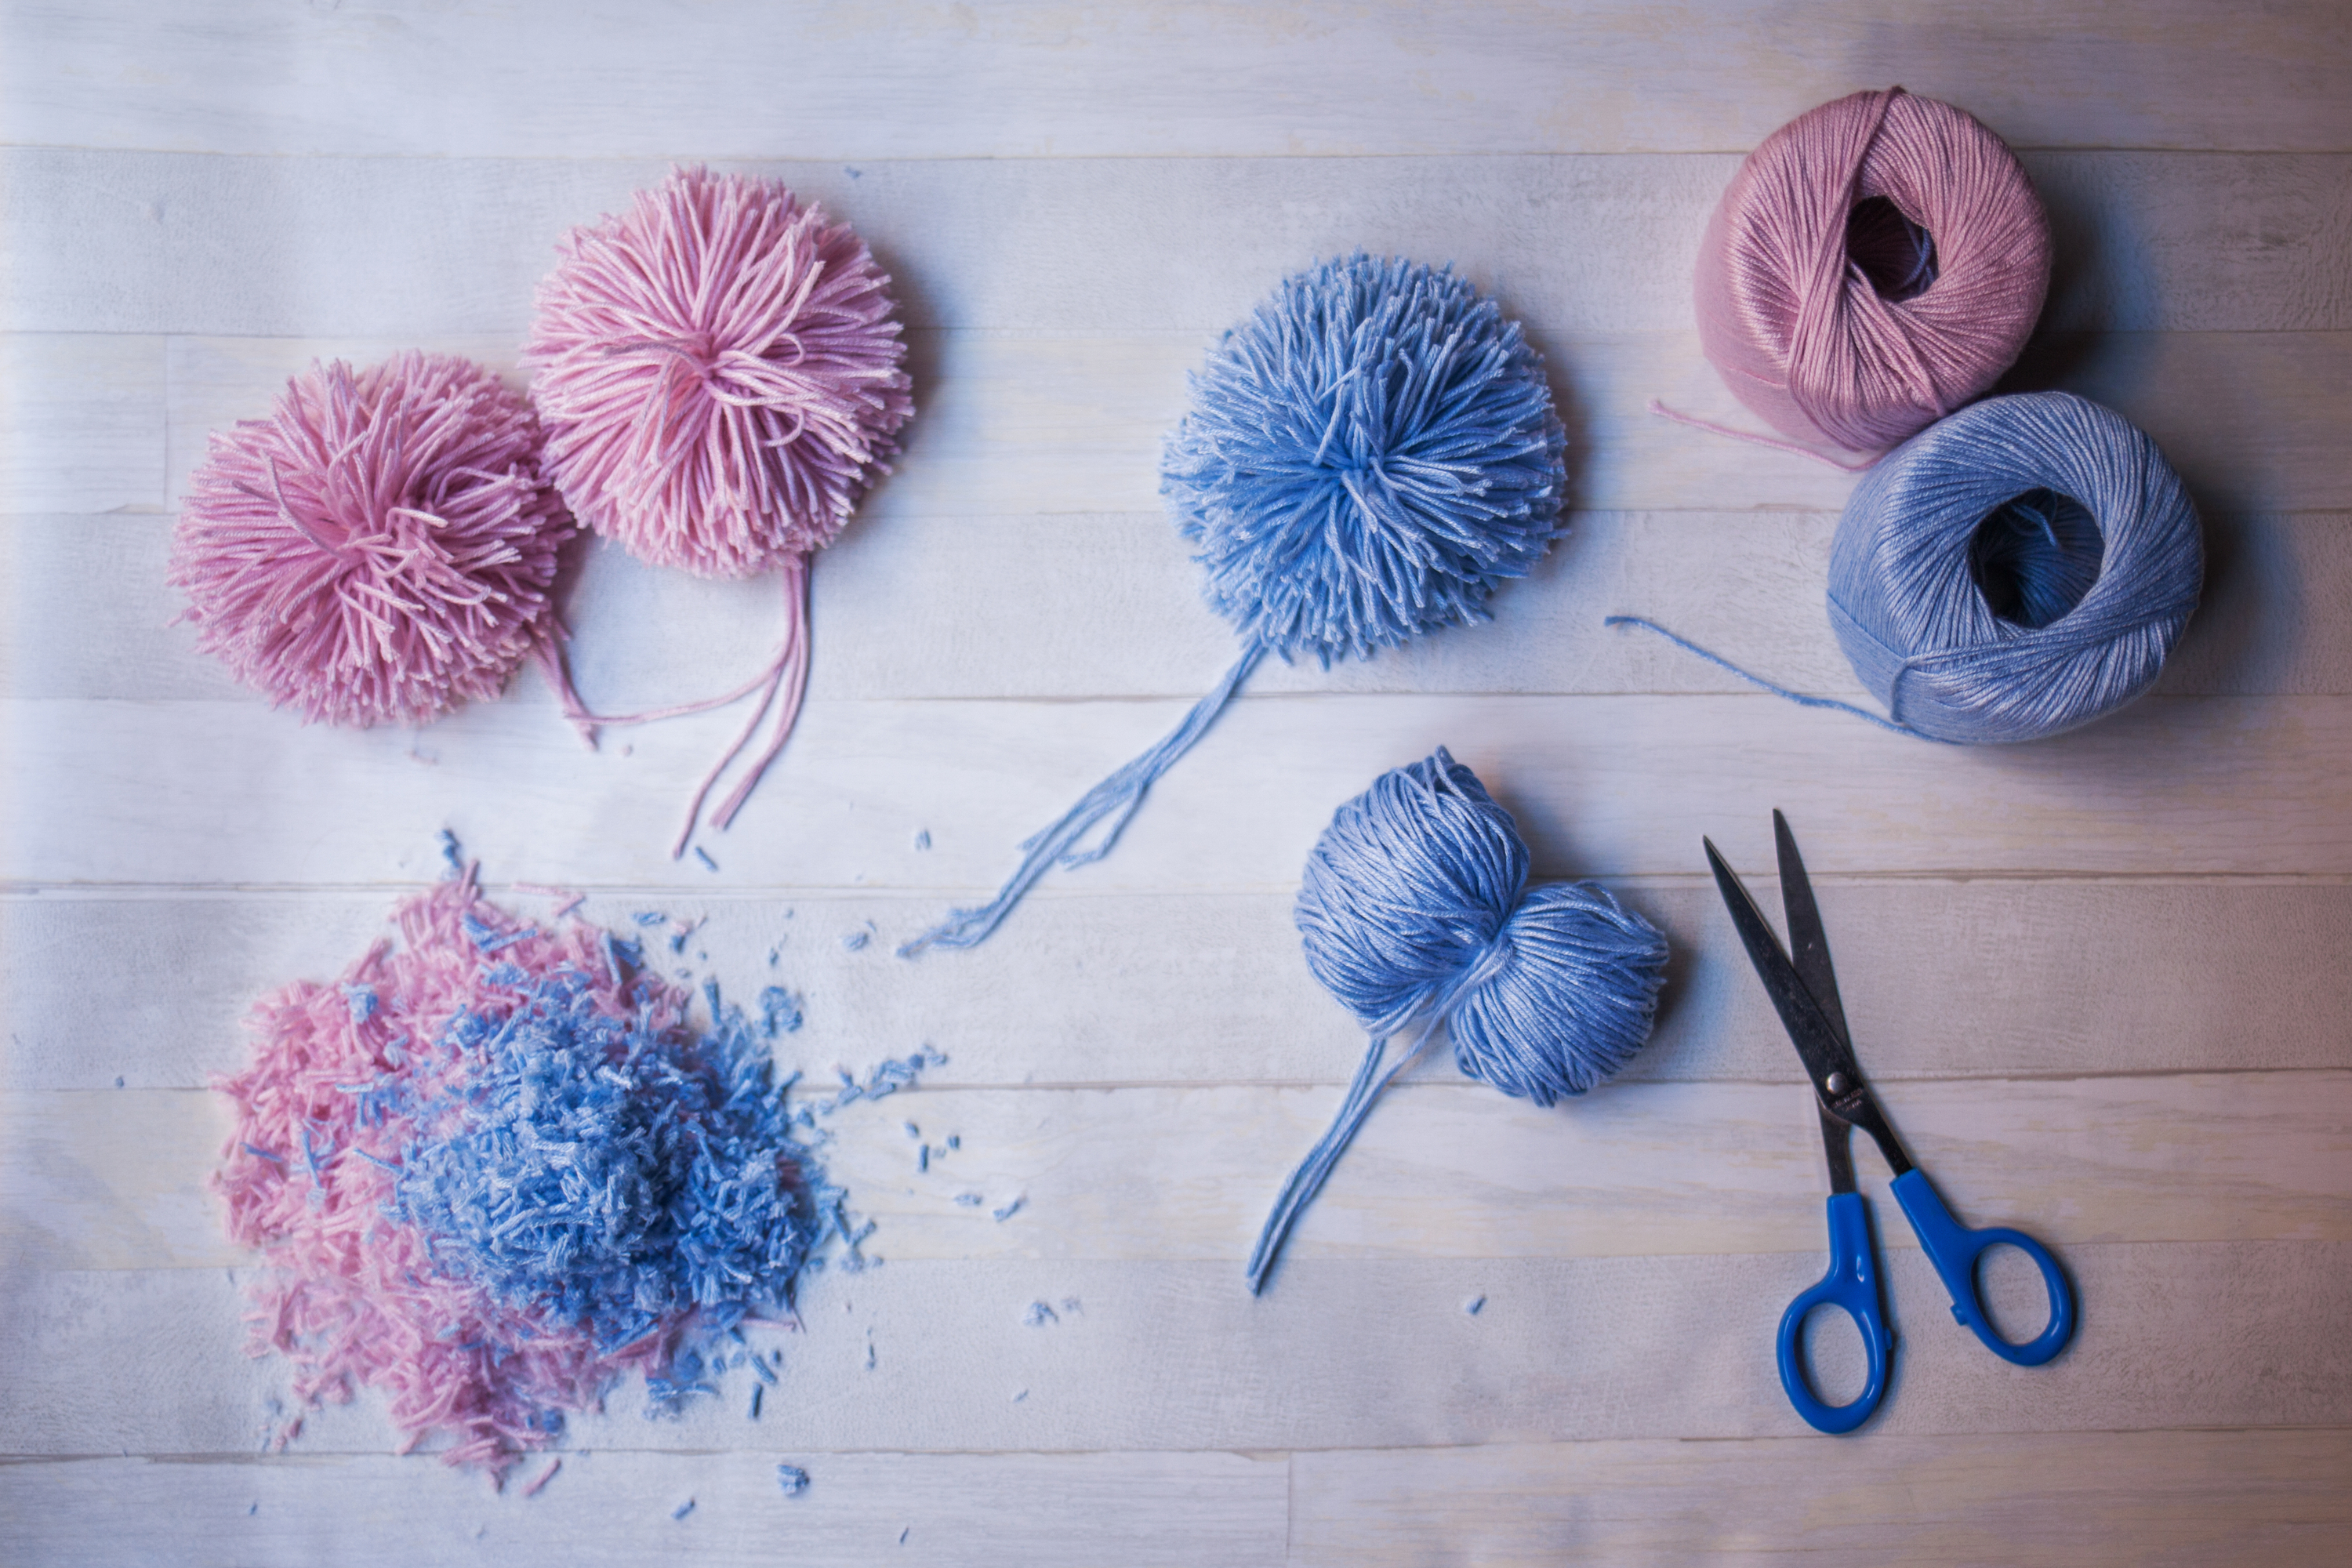 pompom | pompom projects | crochet projects | crochet pompom projects | crafts | diy | diy crafts | diy projects | crochet | diy crochet projects 